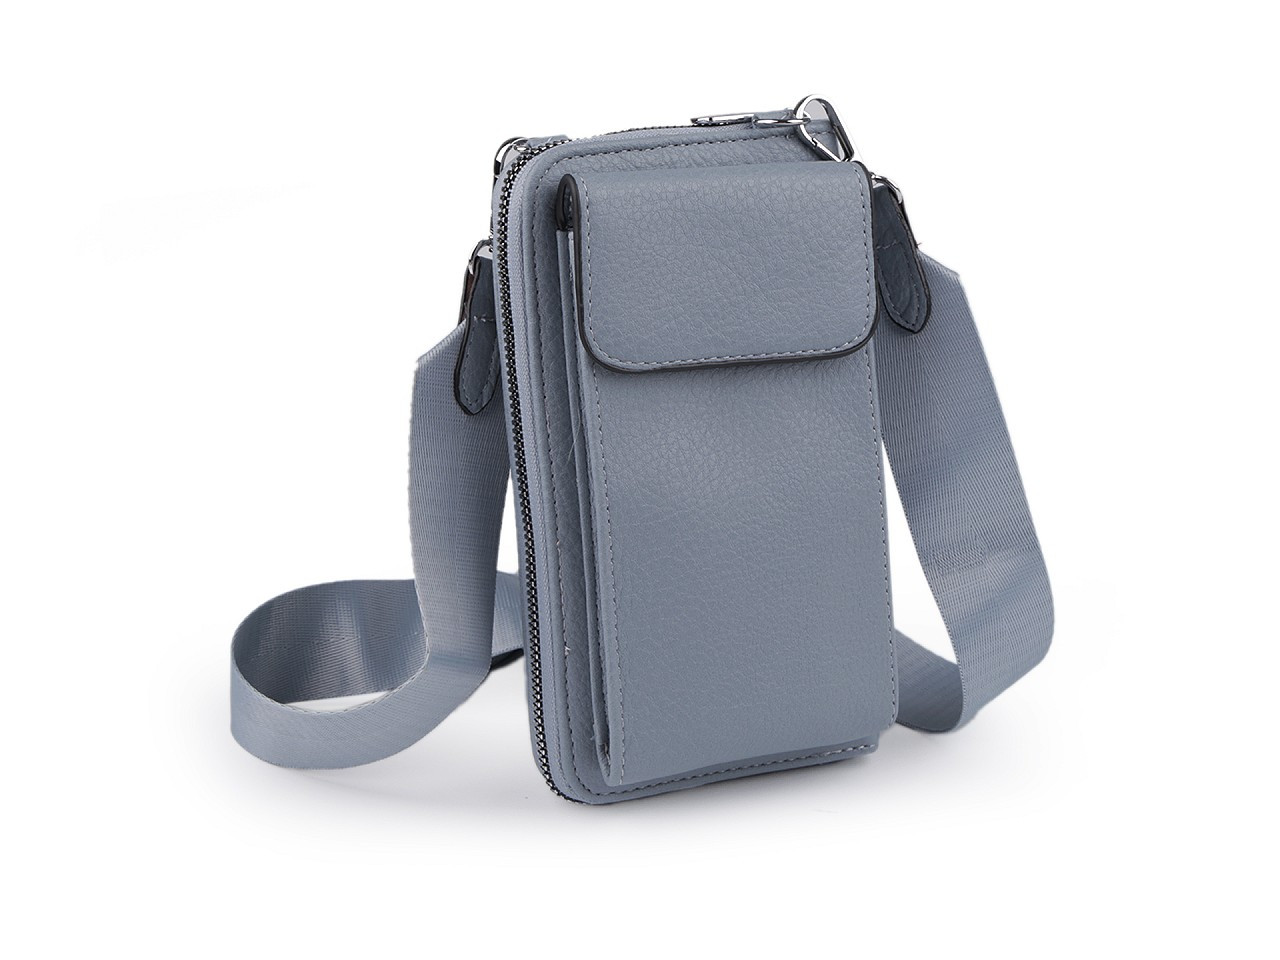 Peněženka s kapsou na mobil přes rameno crossbody s klíčenkou 11x19 cm, barva 5 modrošedá sv.